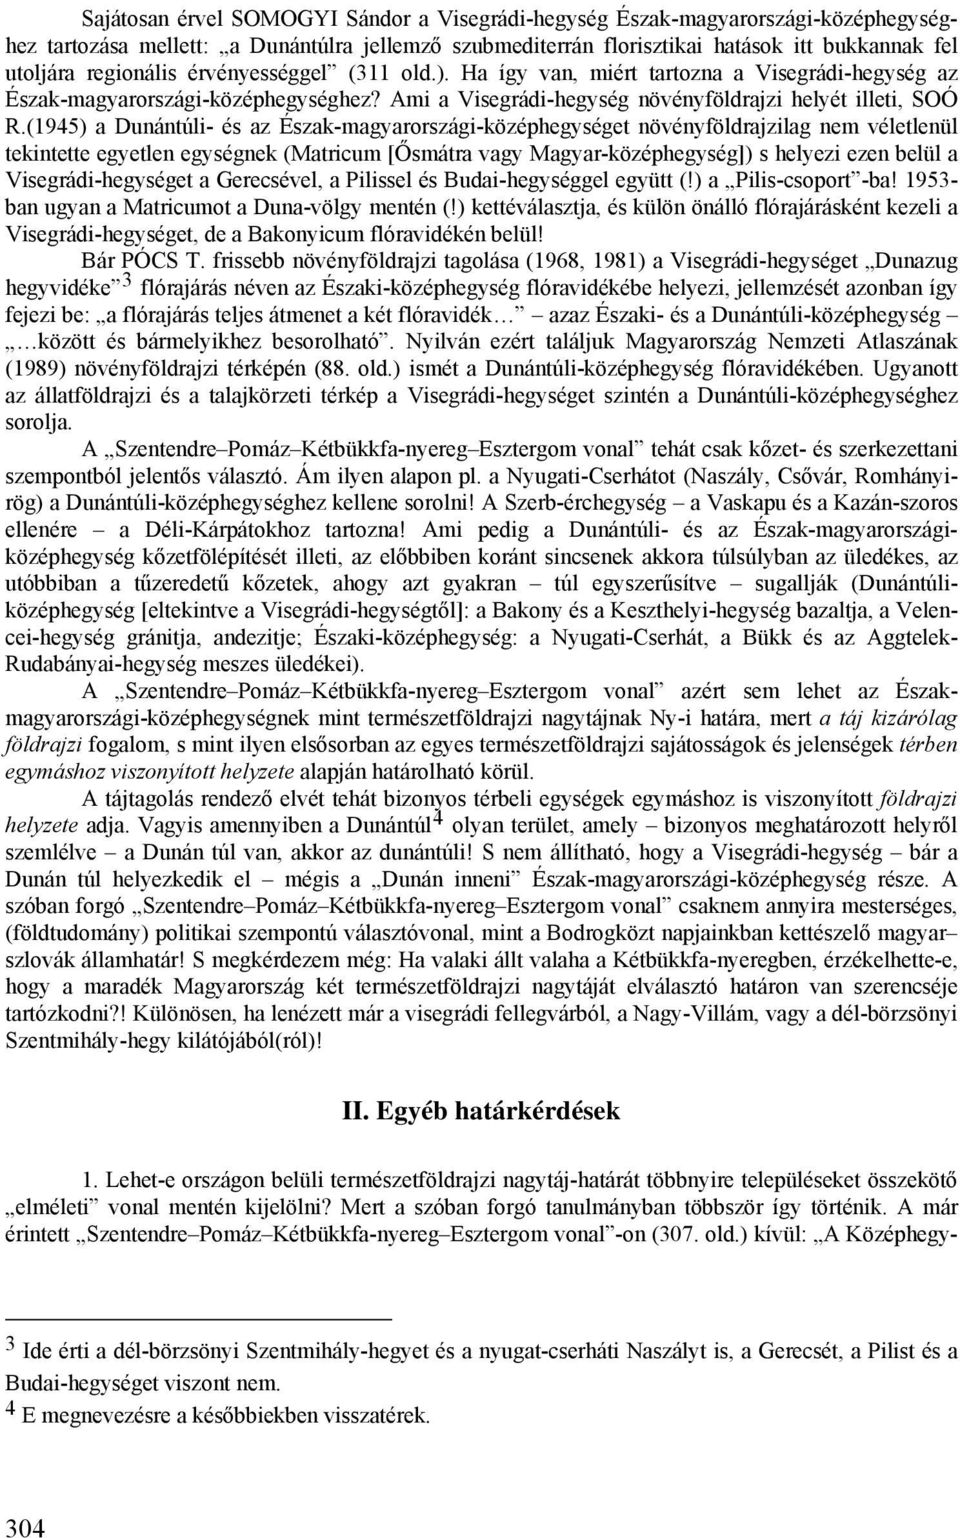 (1945) a Dunántúli- és az Észak-magyarországi-középhegységet növényföldrajzilag nem véletlenül tekintette egyetlen egységnek (Matricum [Ősmátra vagy Magyar-középhegység]) s helyezi ezen belül a